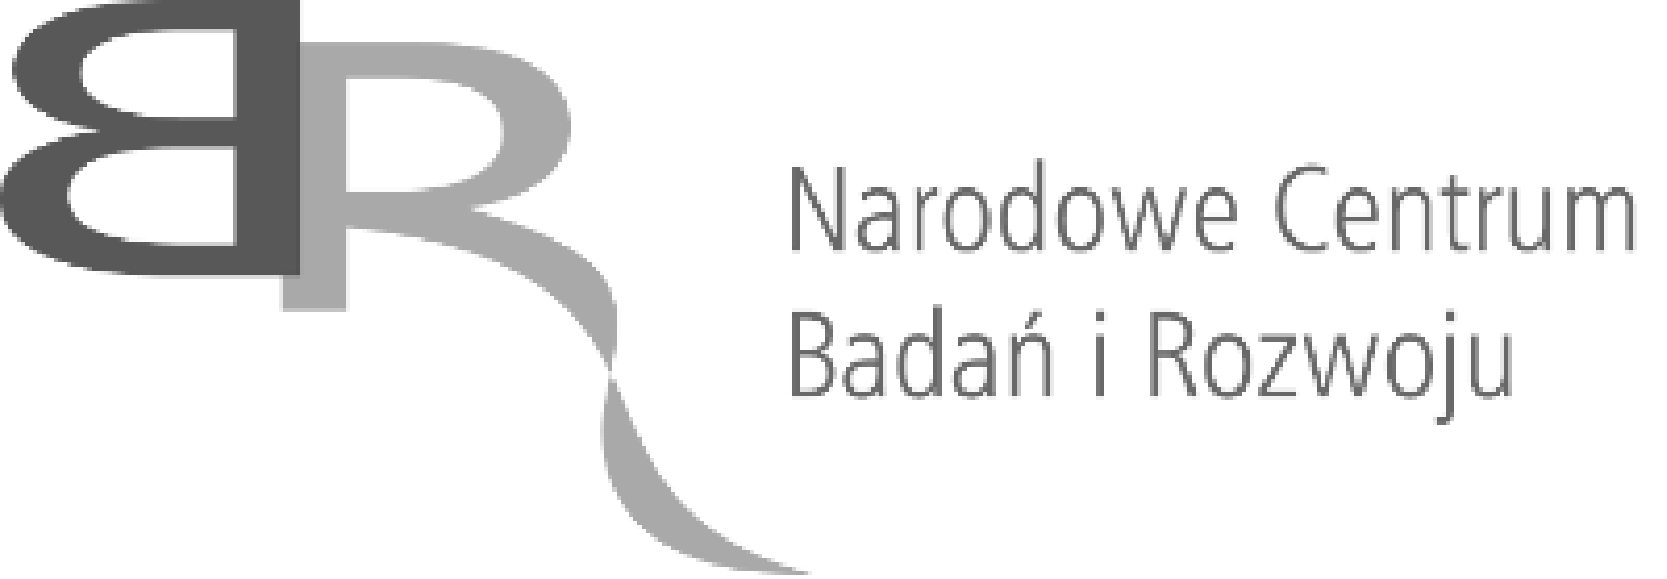 NCBR-logo